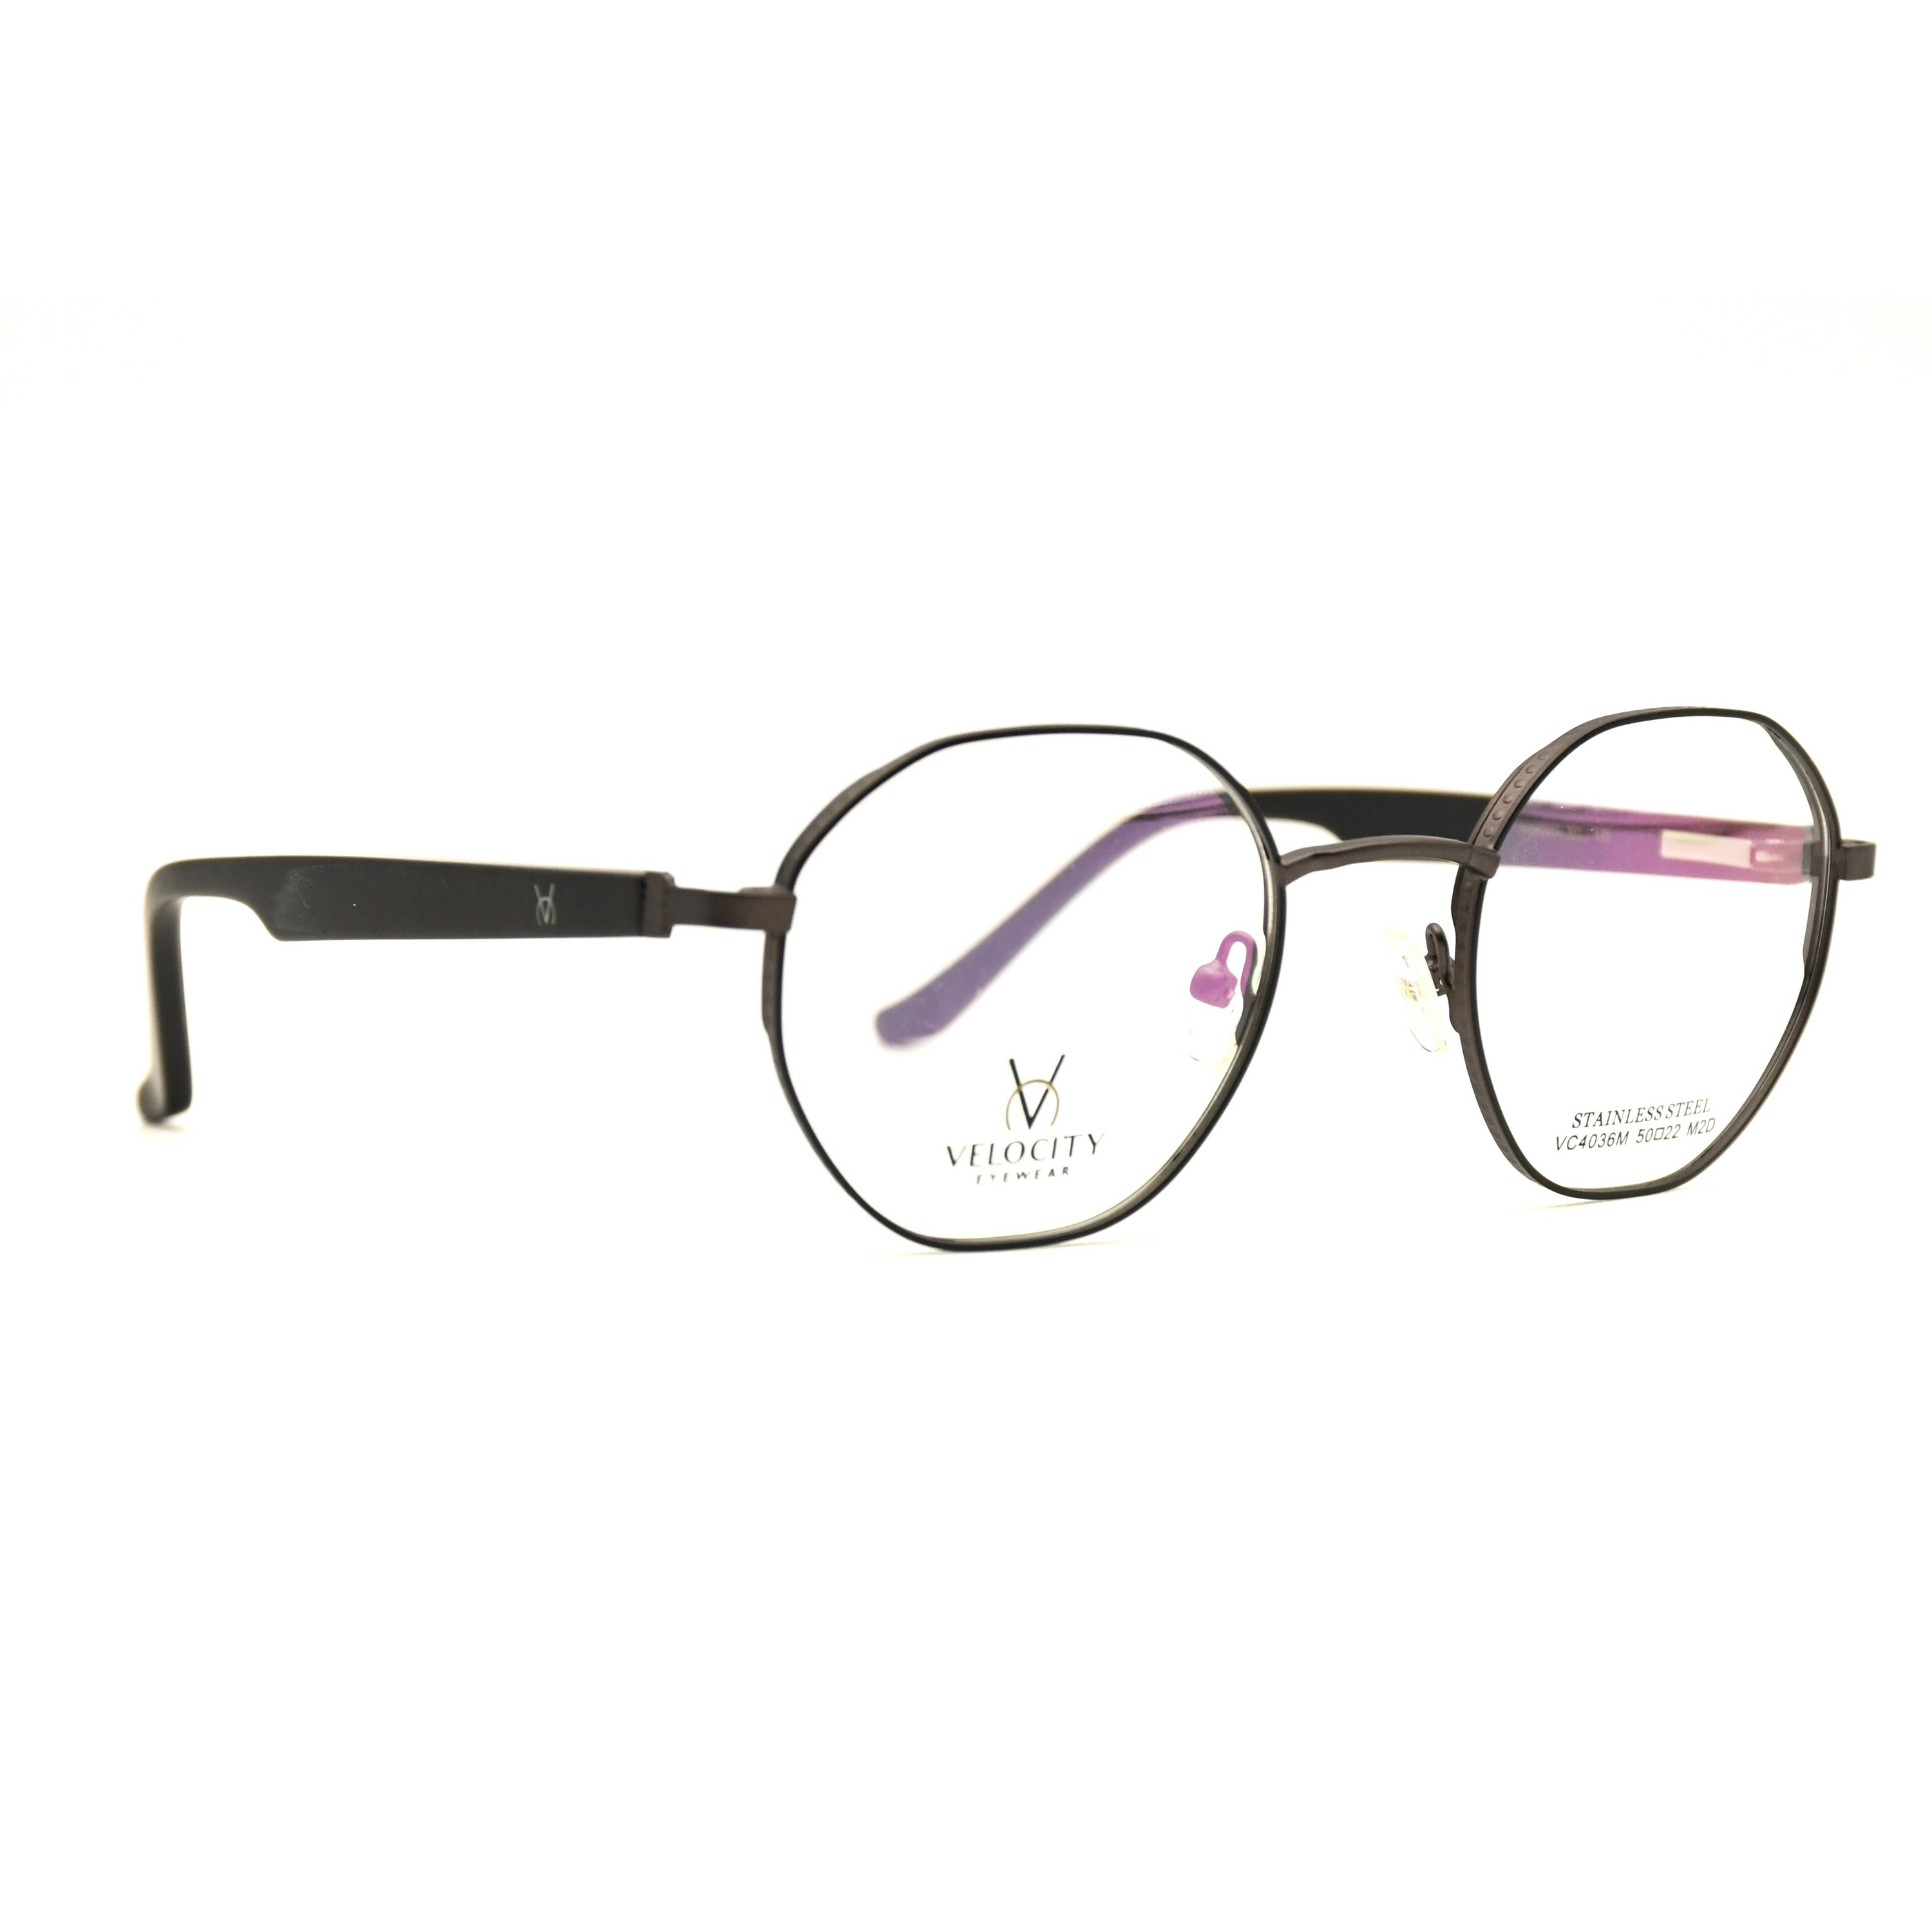 Velocity Full Rim Eyeglasses - 4036-M2D